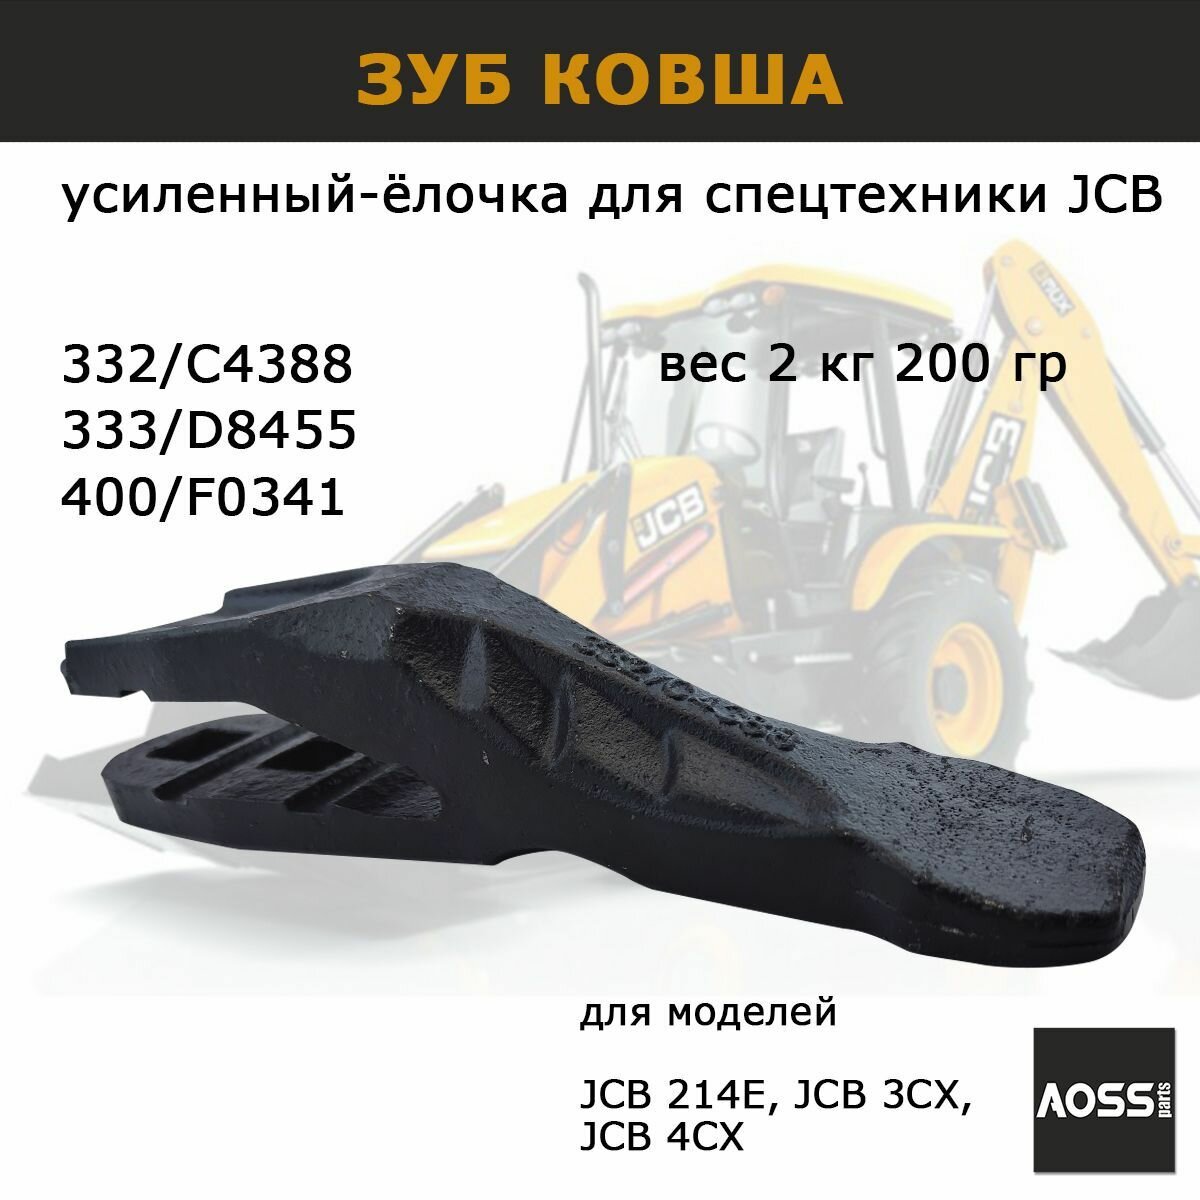 Зуб ковша для JCB 332/C4388 усиленный вес 2,2 кг (ёлочка) запчасти AOSS parts для навесного оборудования